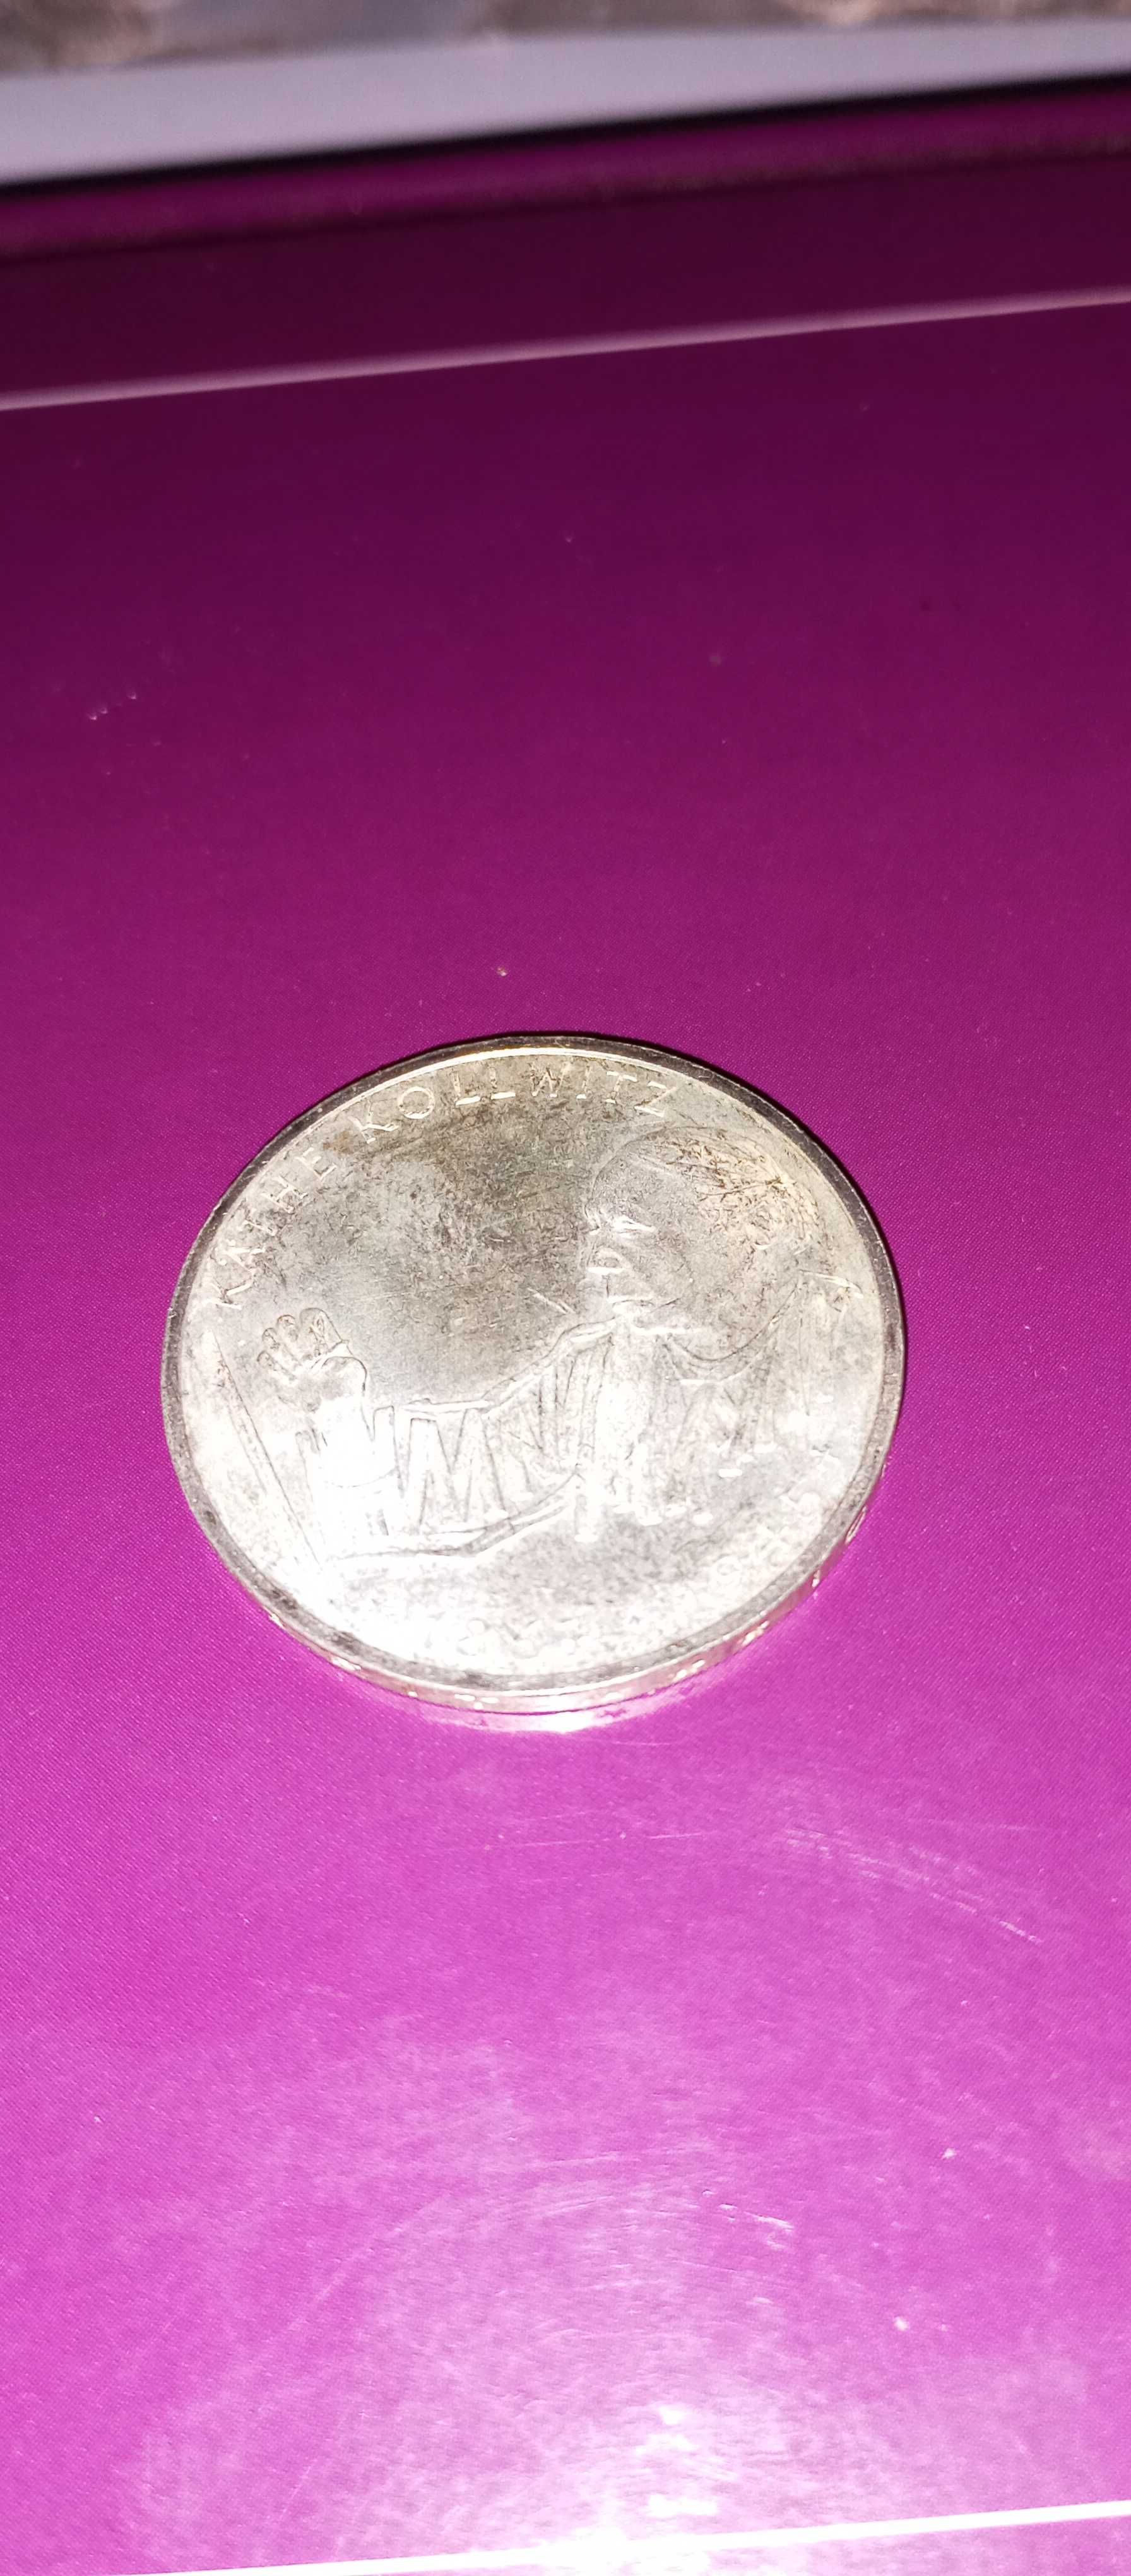 Srebrna moneta 10 marek 1992